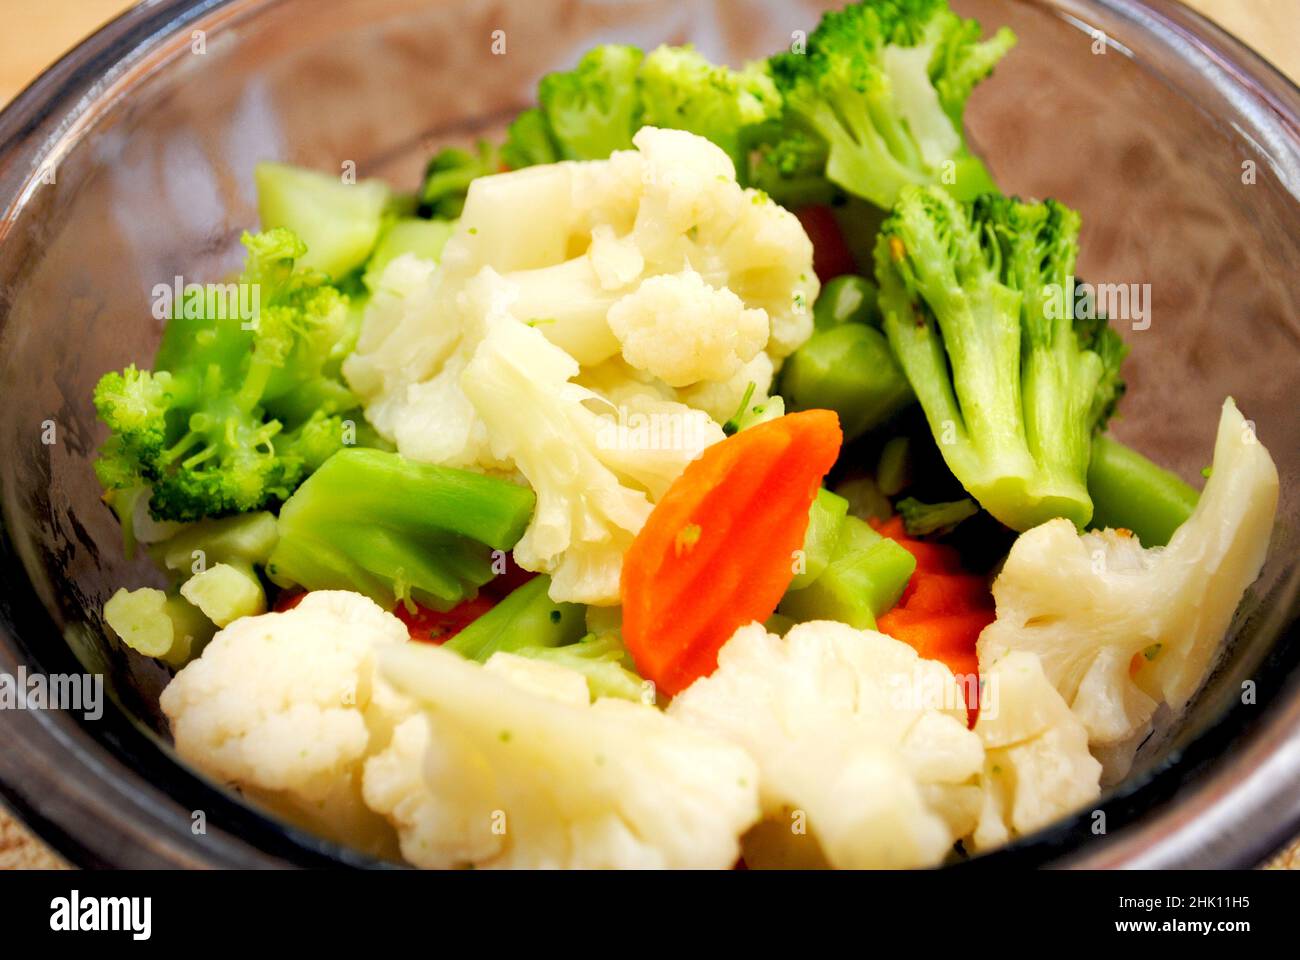 Eine Schüssel mit Broccoli, Blumenkohl und Karotten Stockfoto